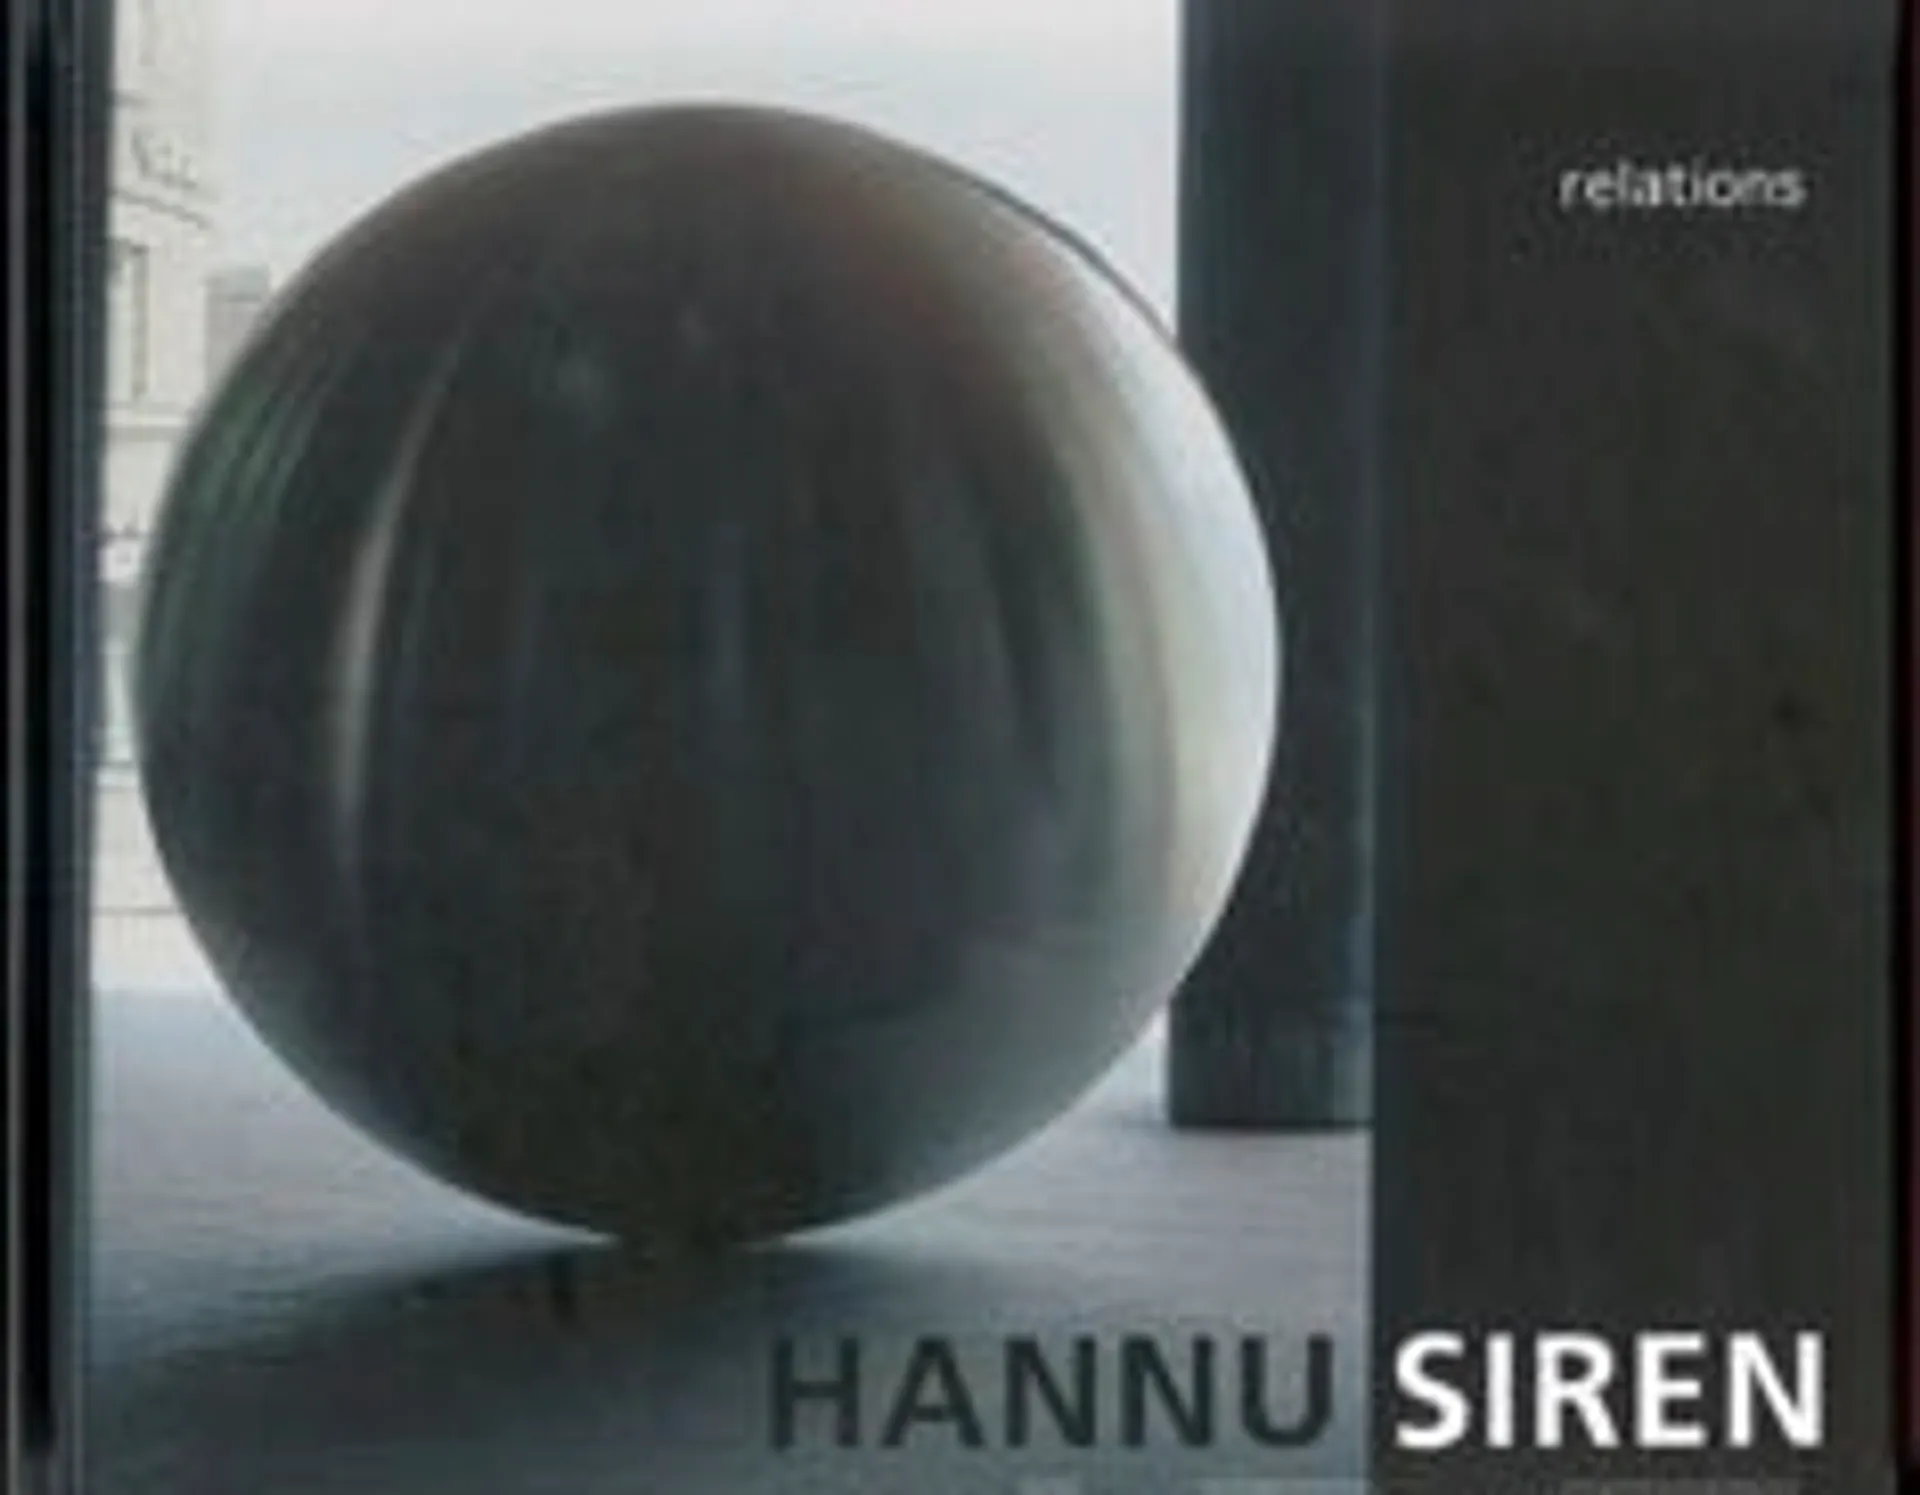 Hannu Siren - relations